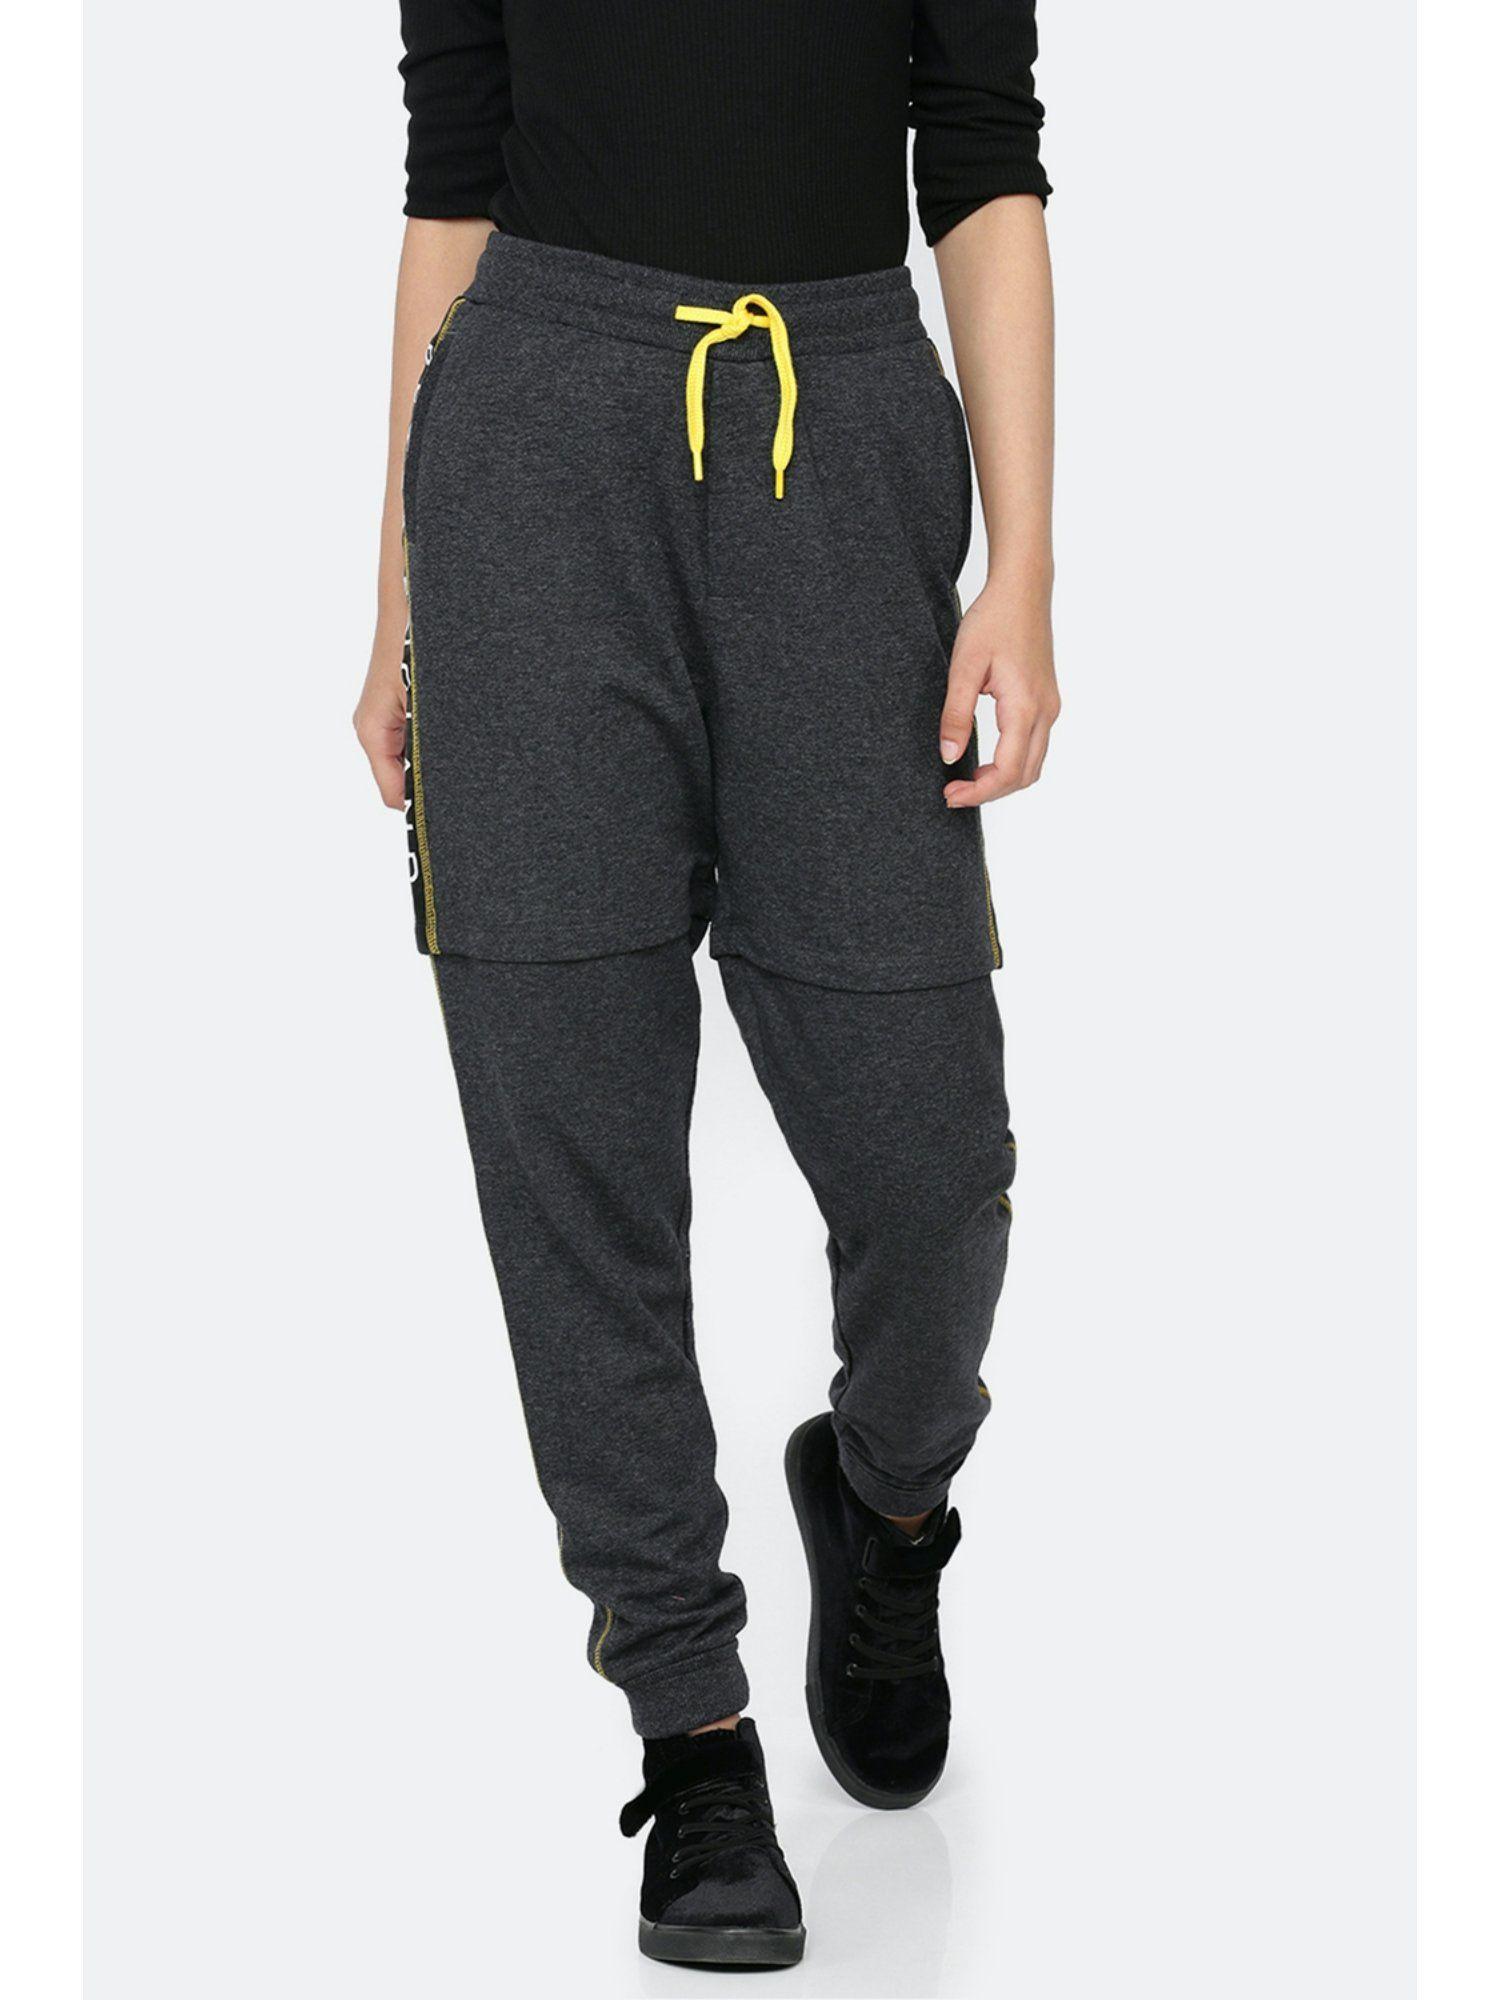 grey printed jogger pants